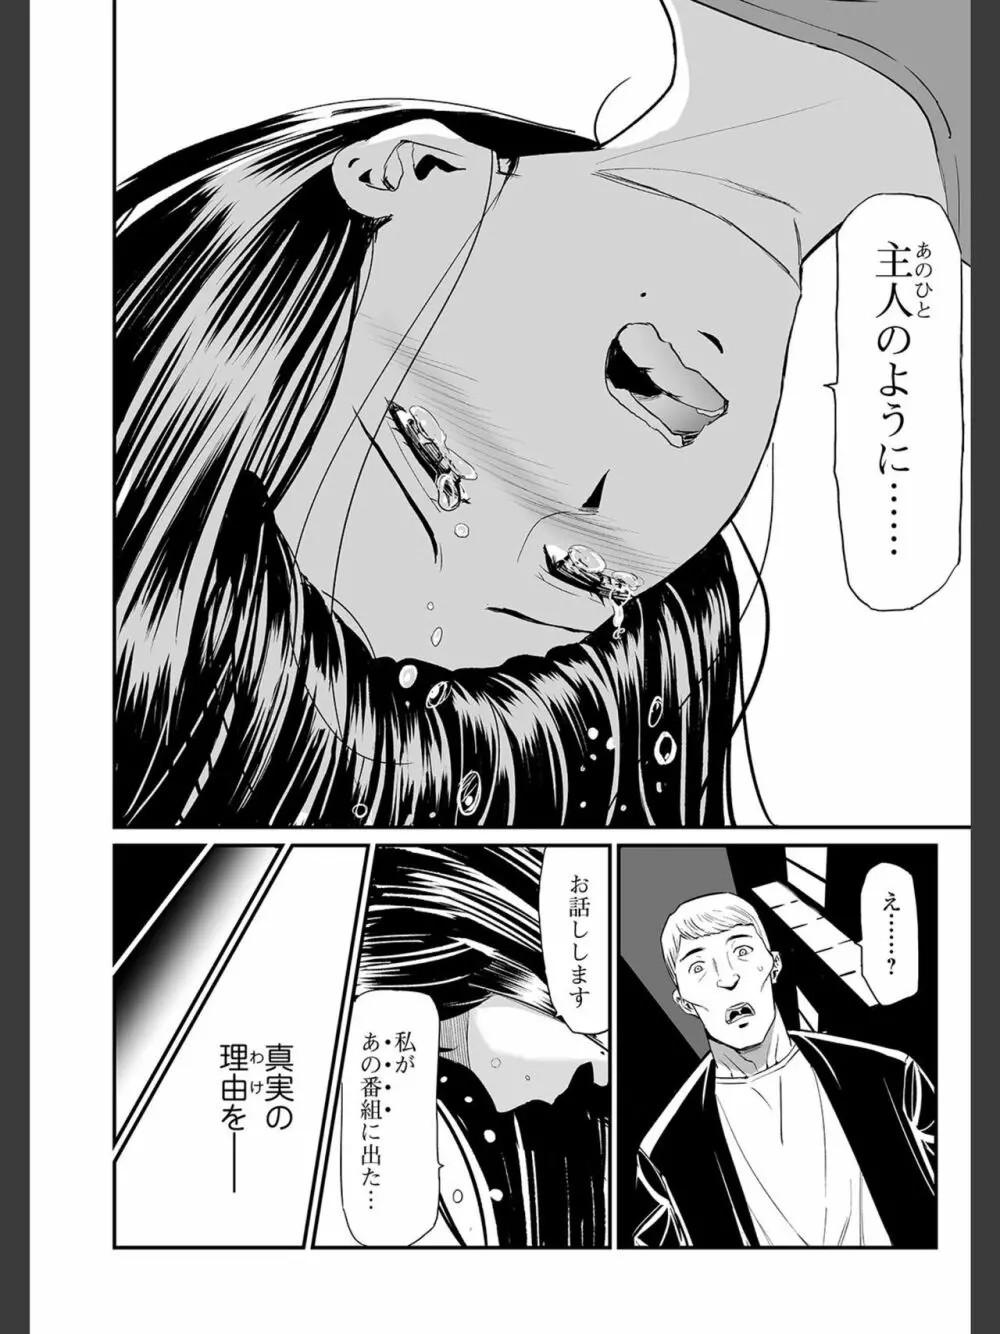 [山田タヒチ]人妻通販 -売られた女- 【FANZA特別版】 110ページ